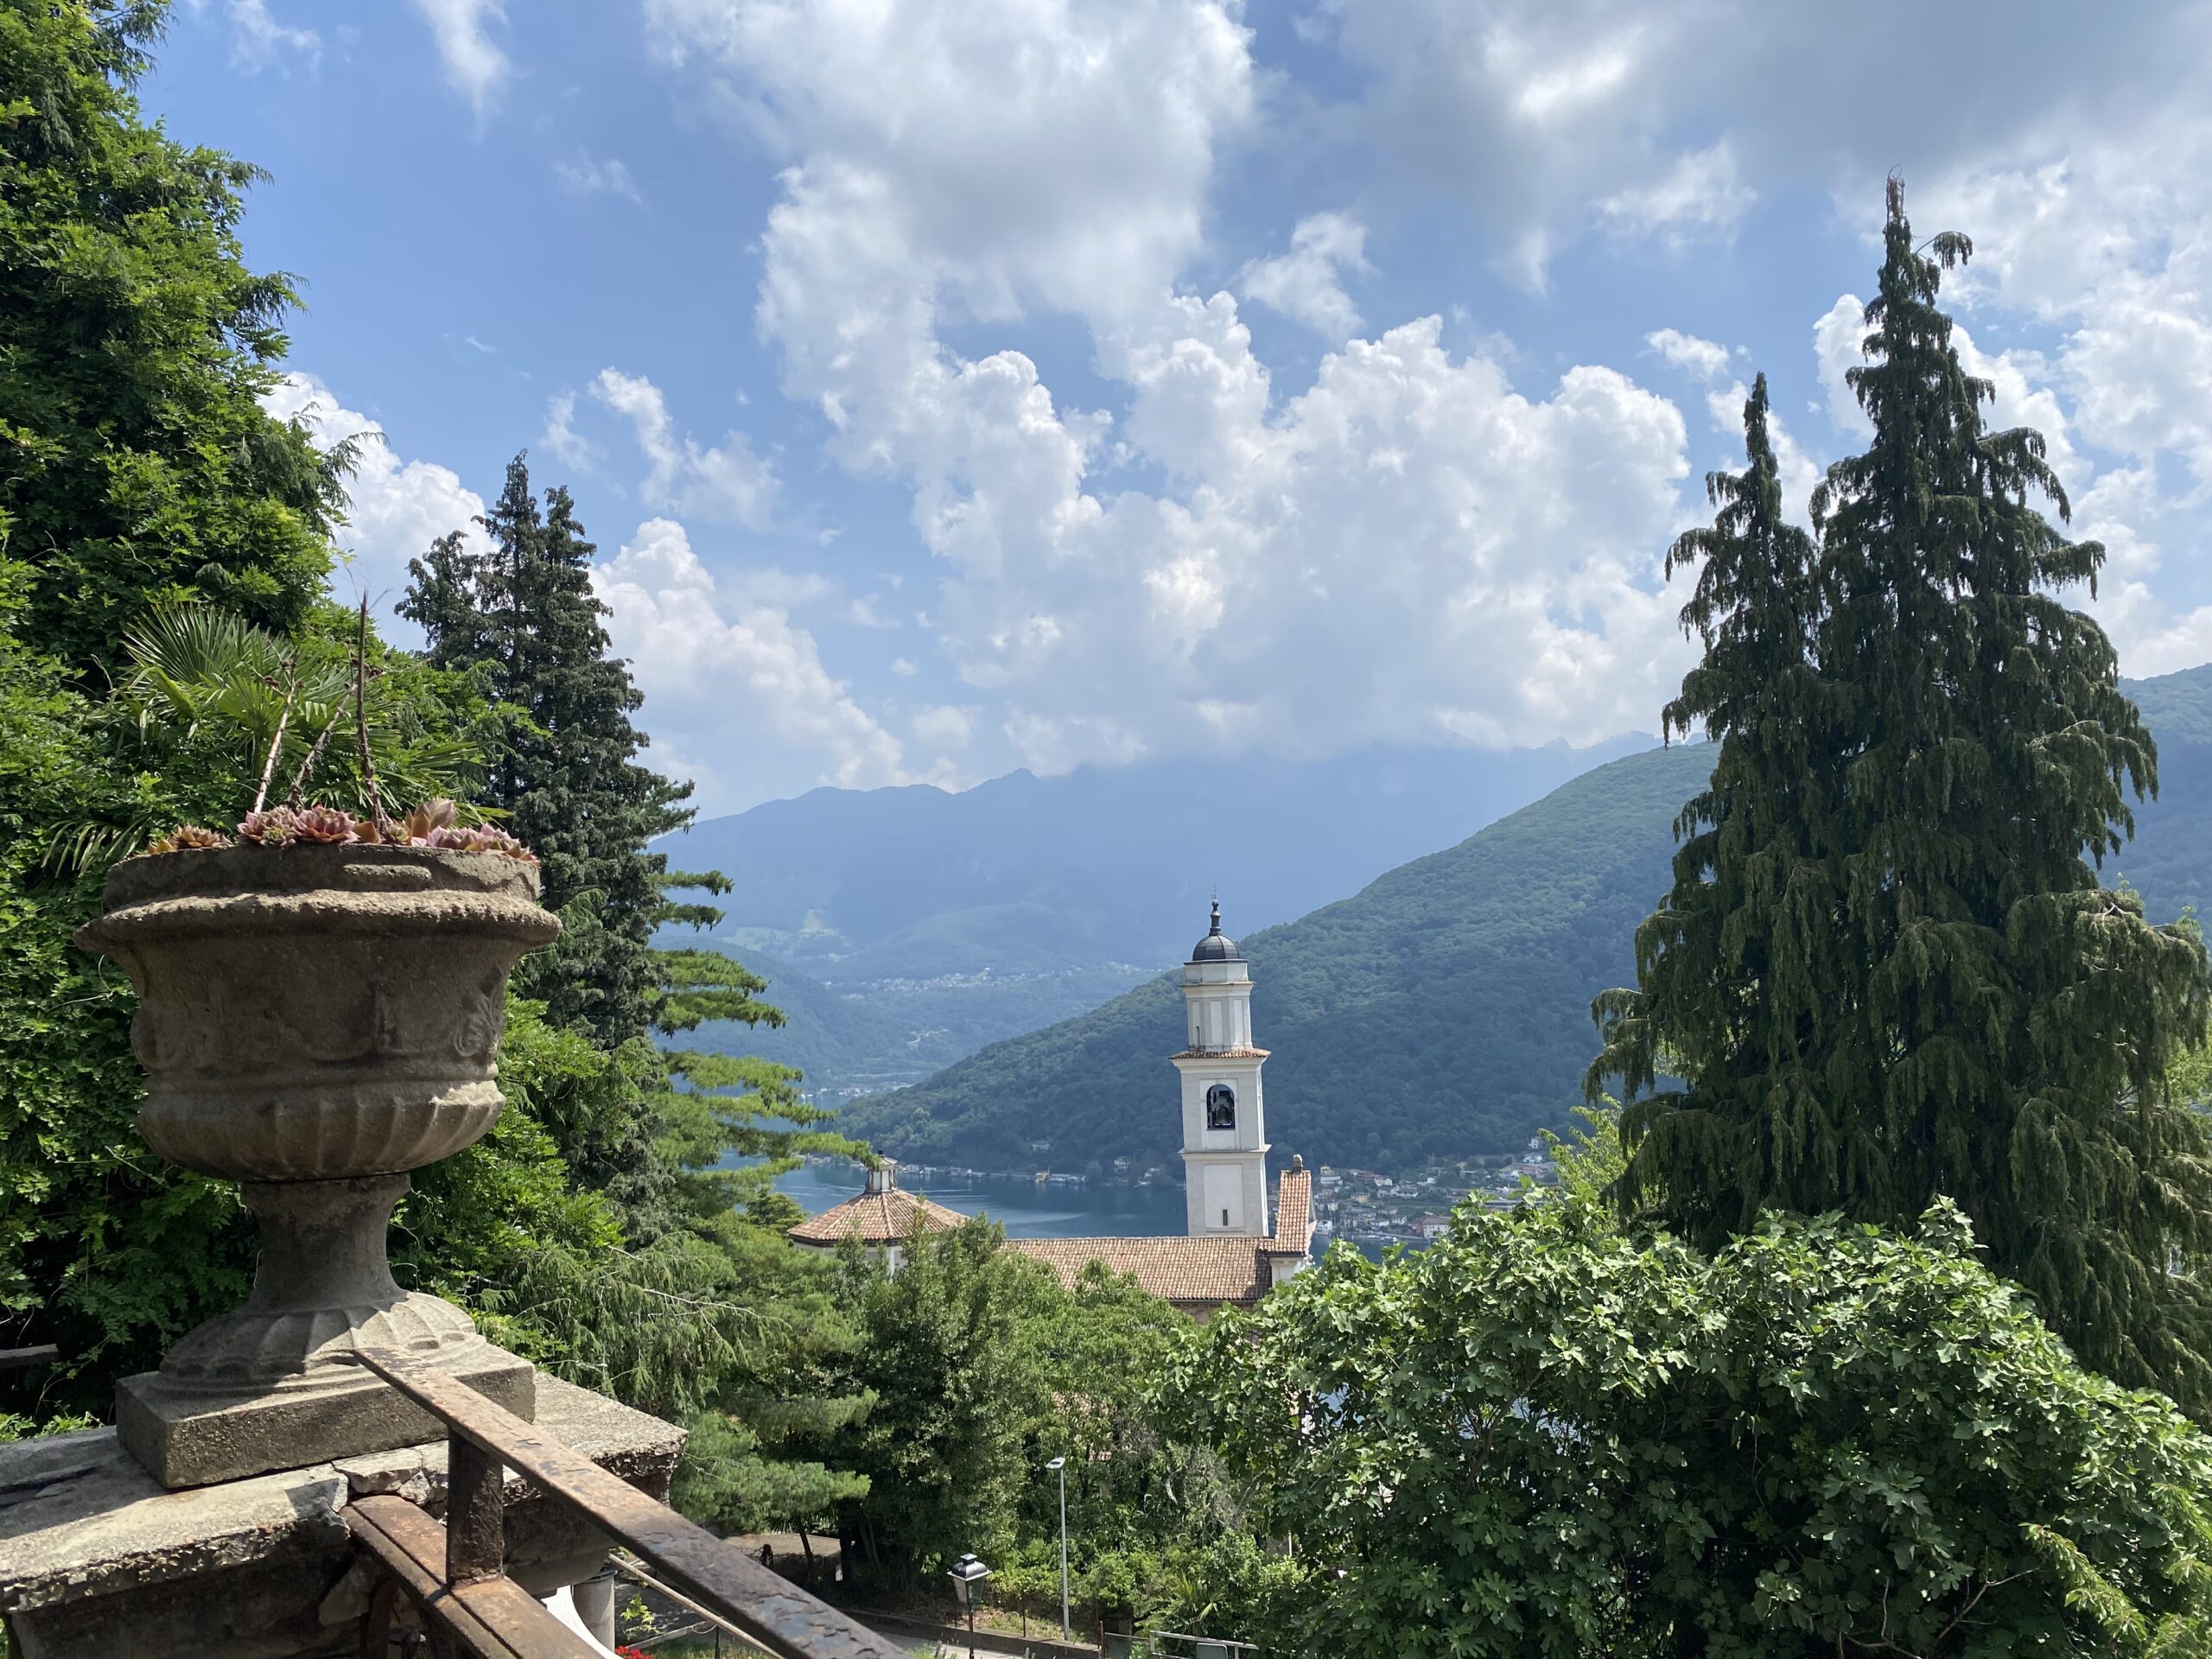 views across Lake Lugano